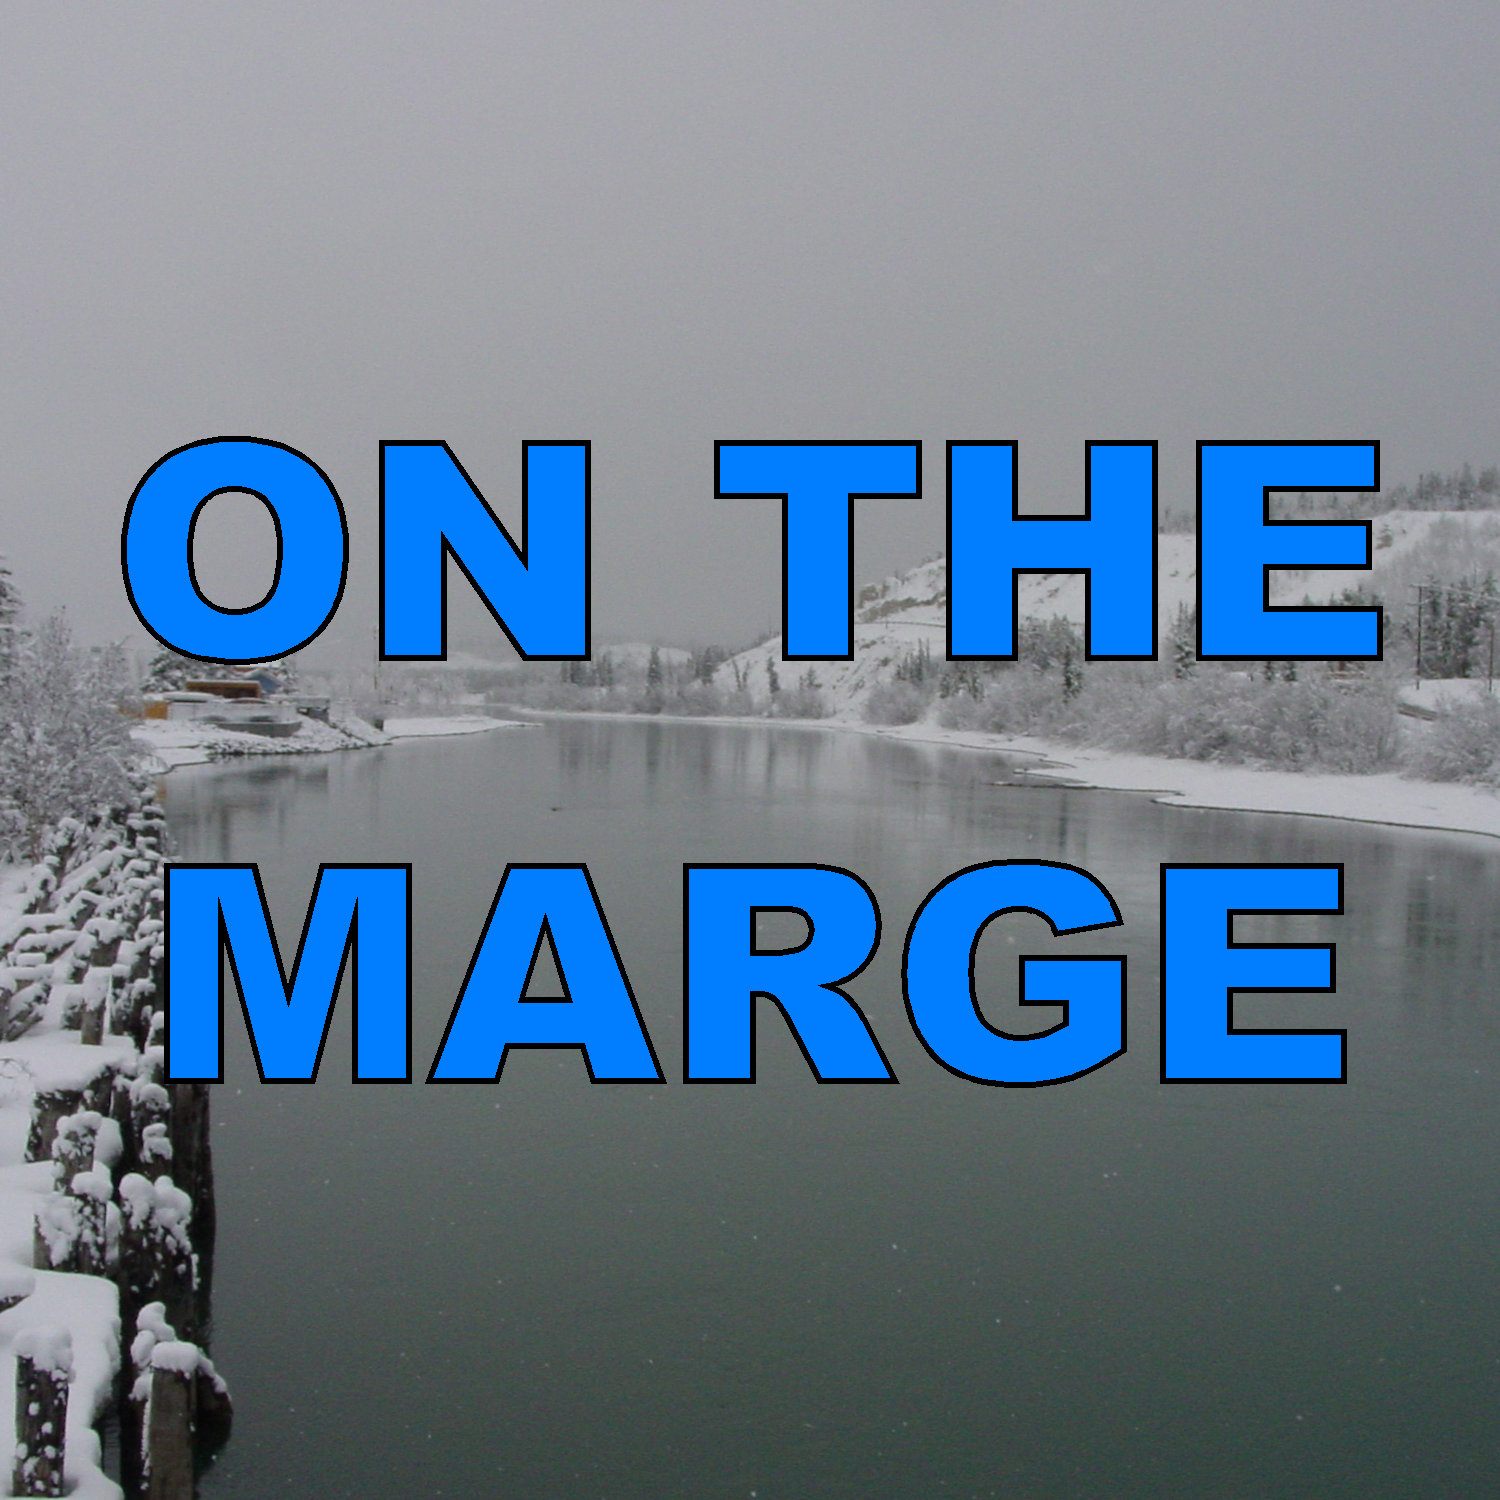 Yukon, On the Marge